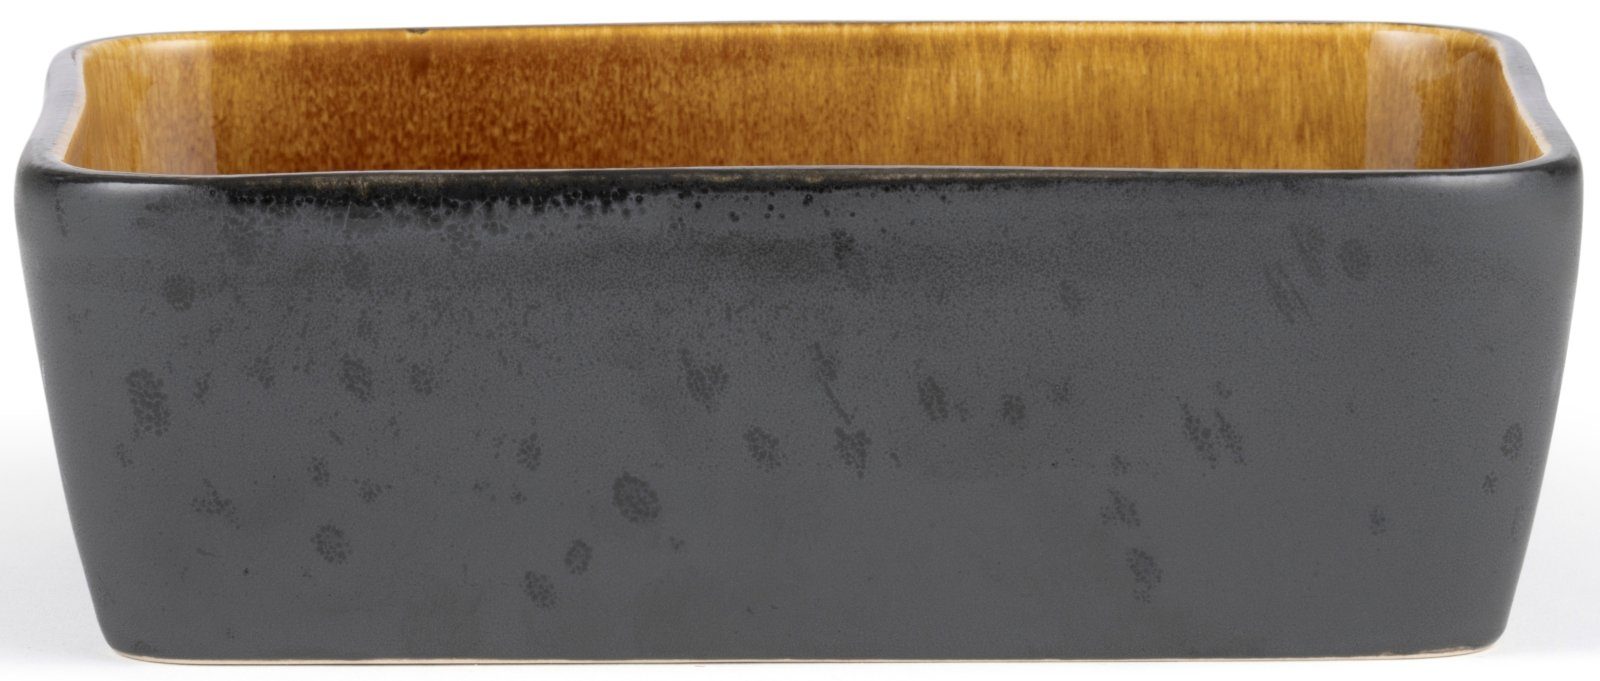 Bitz Auflaufform Auflaufform rechteckig black / amber 19 x 14 cm, Steingut